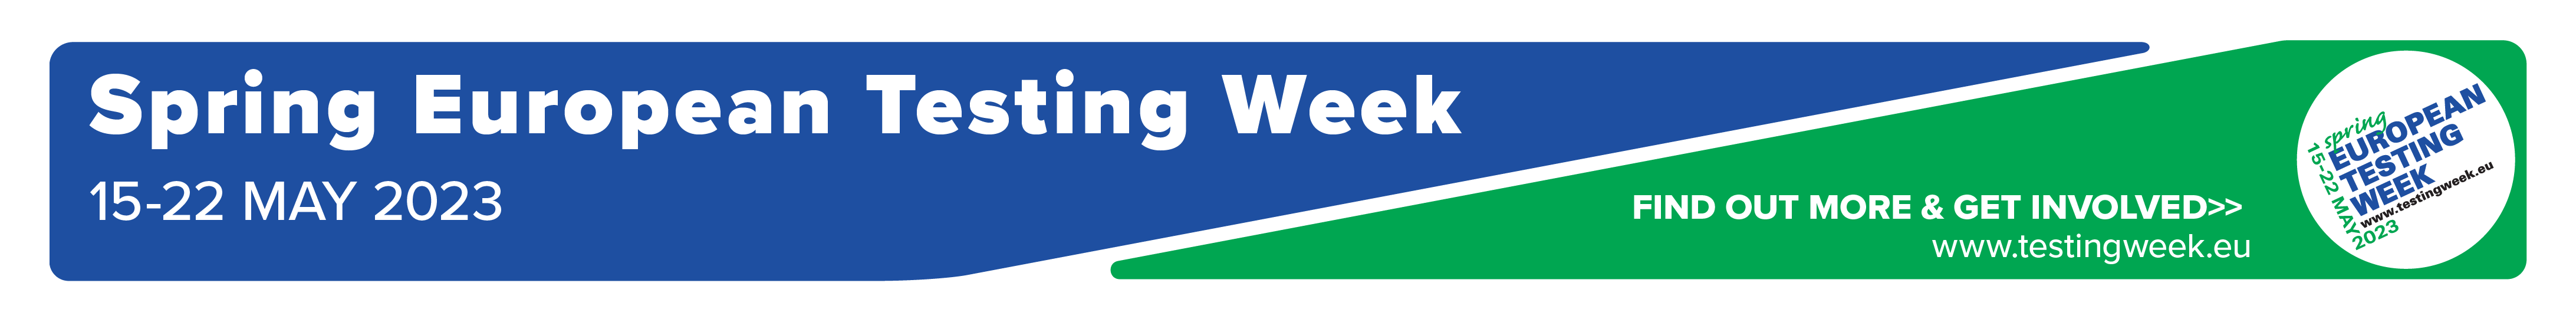 European Testing Week, click here for more info - www.testingweek.eu